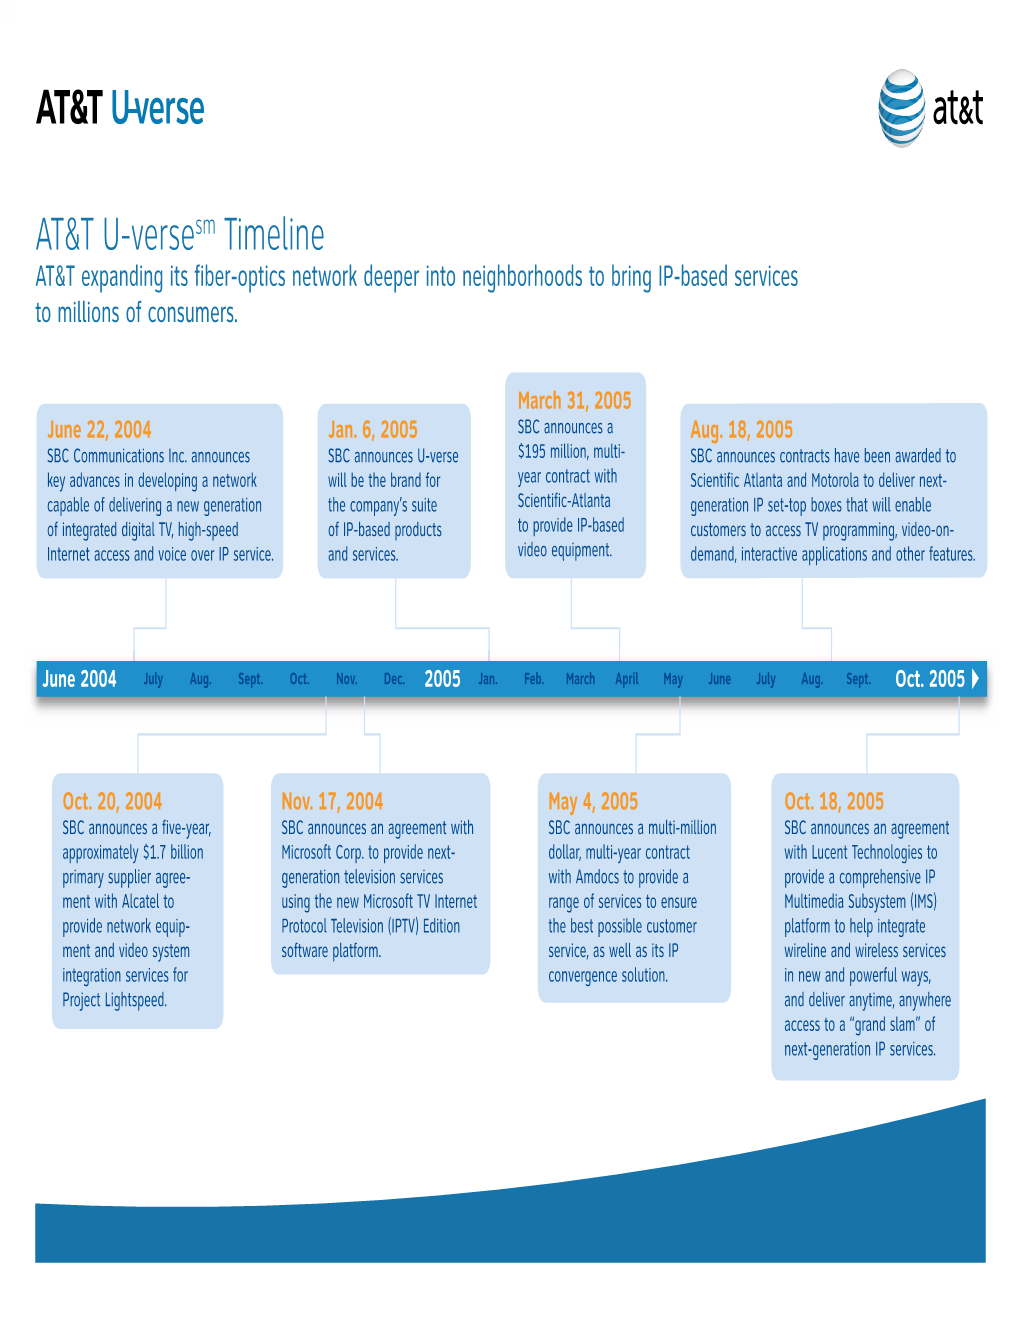 AT&T U-Verse Timeline V10.Ai